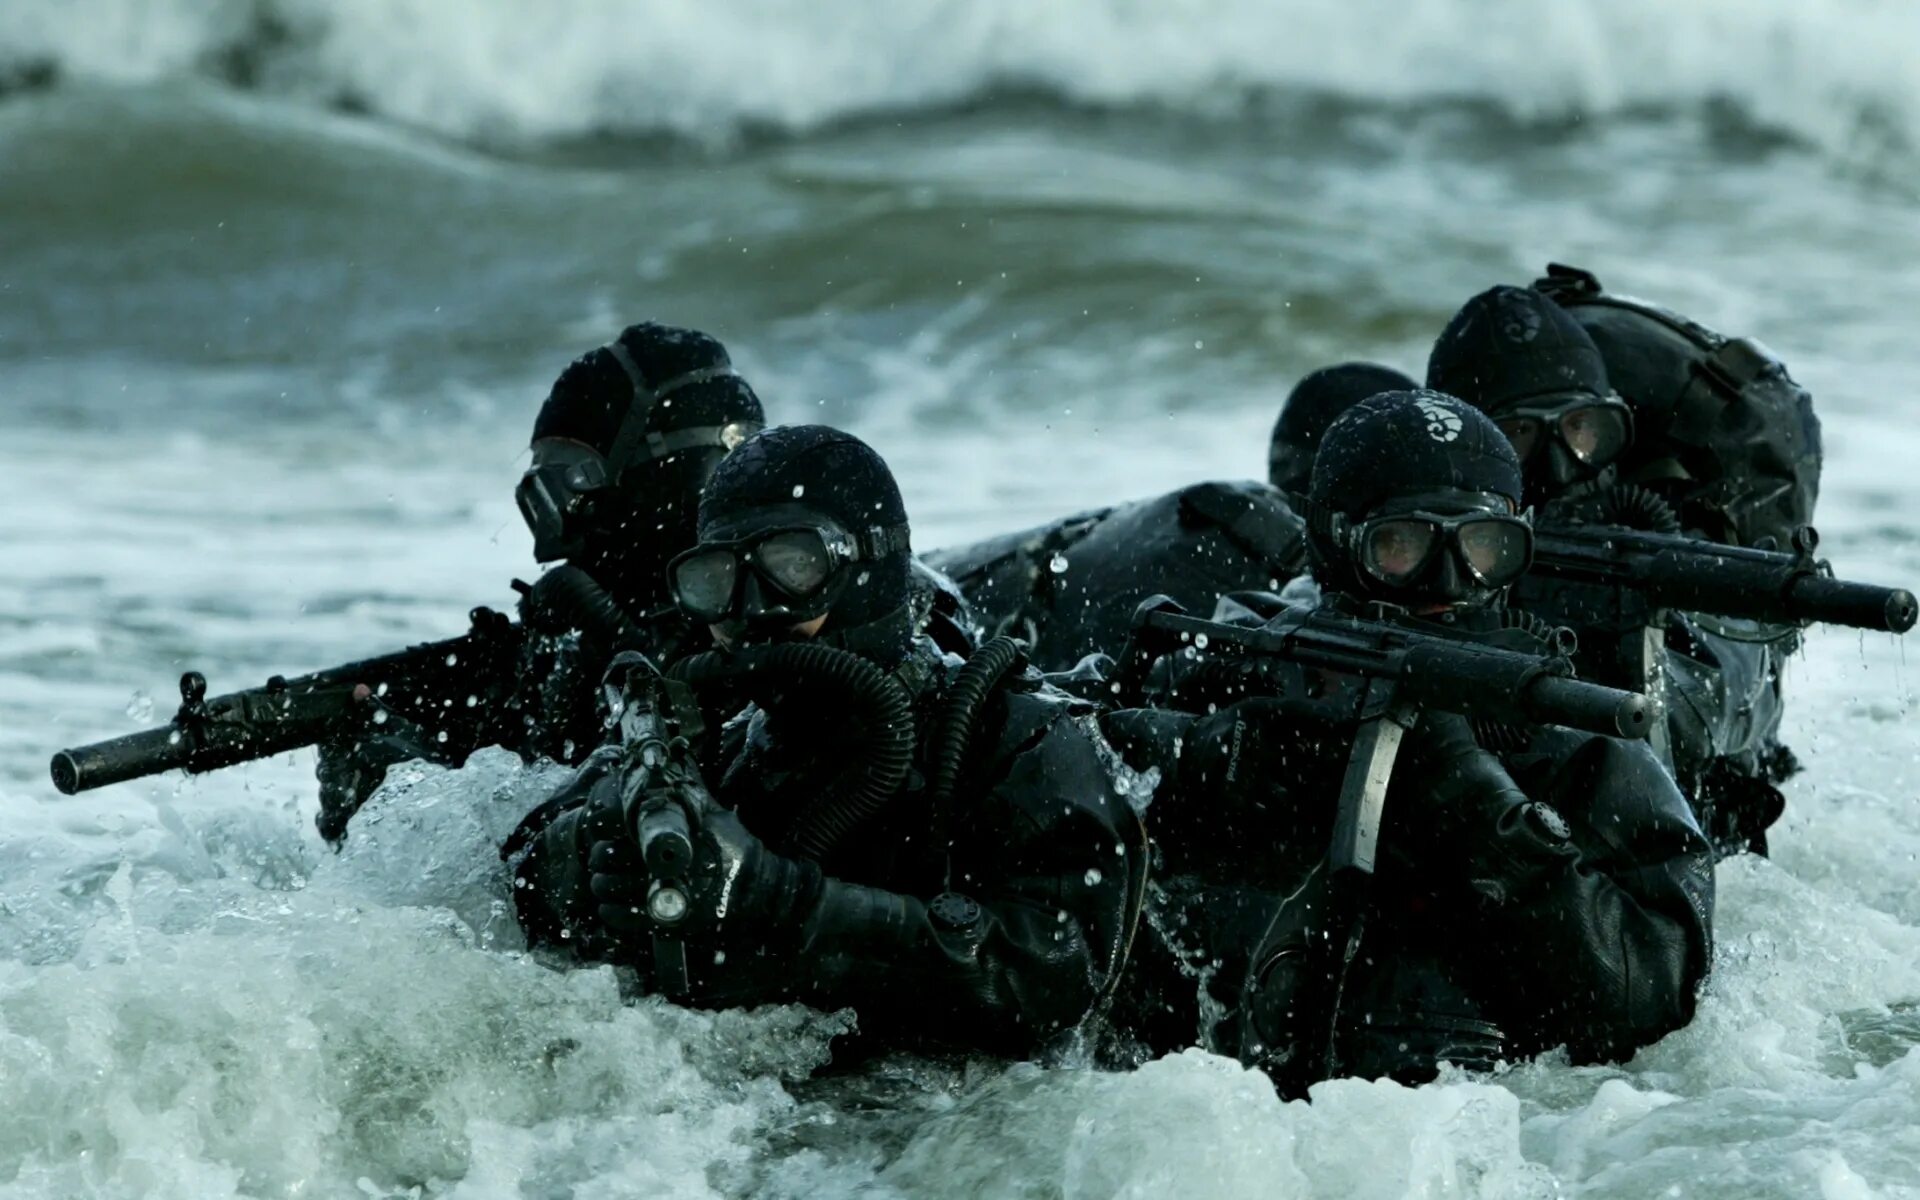 Navy Seal боевые пловцы. Морской котик американский спецназ. Морские котики спецназ ВМС США. Спецназ Seal Special Forces.